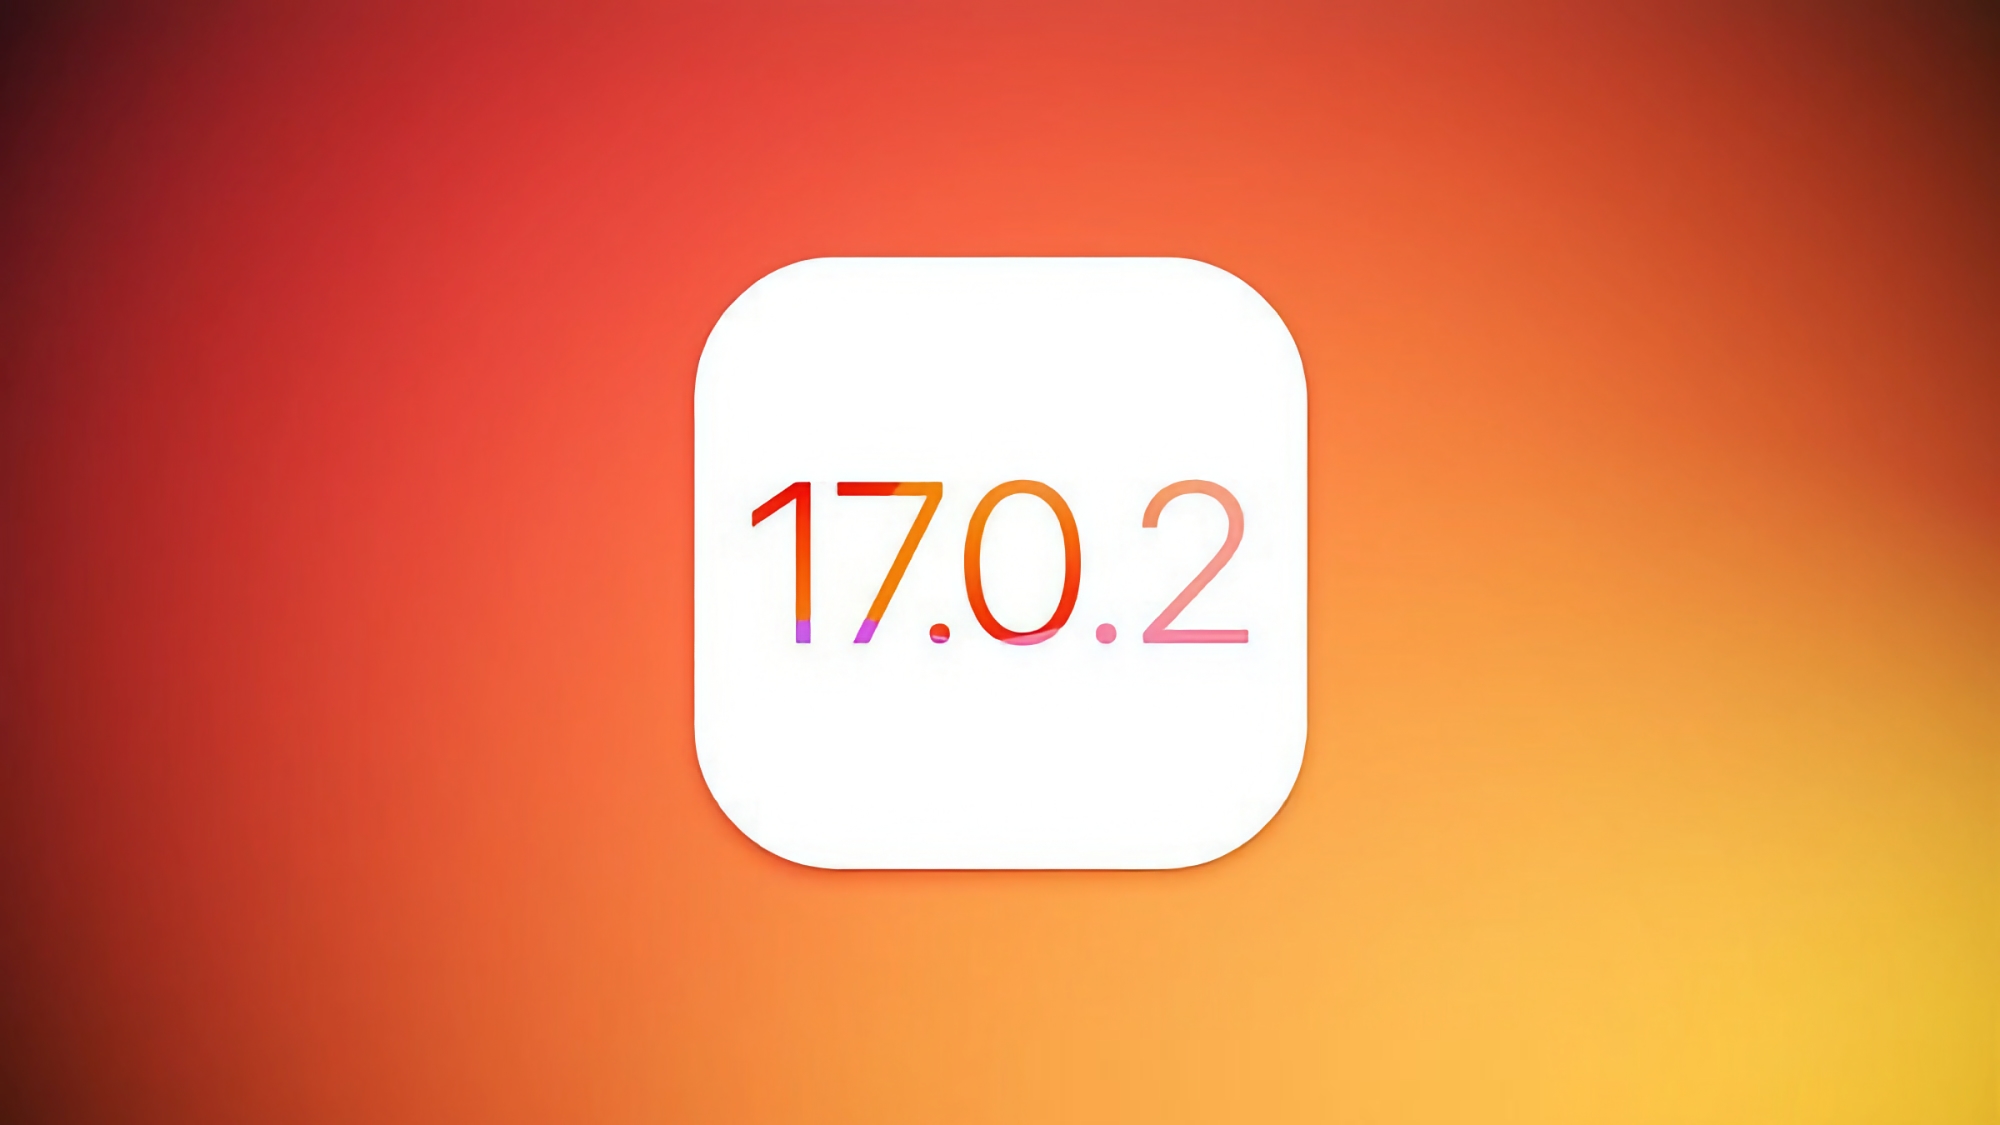 Les utilisateurs d'iPhone ont commencé à recevoir la mise à jour iOS 17.0.2